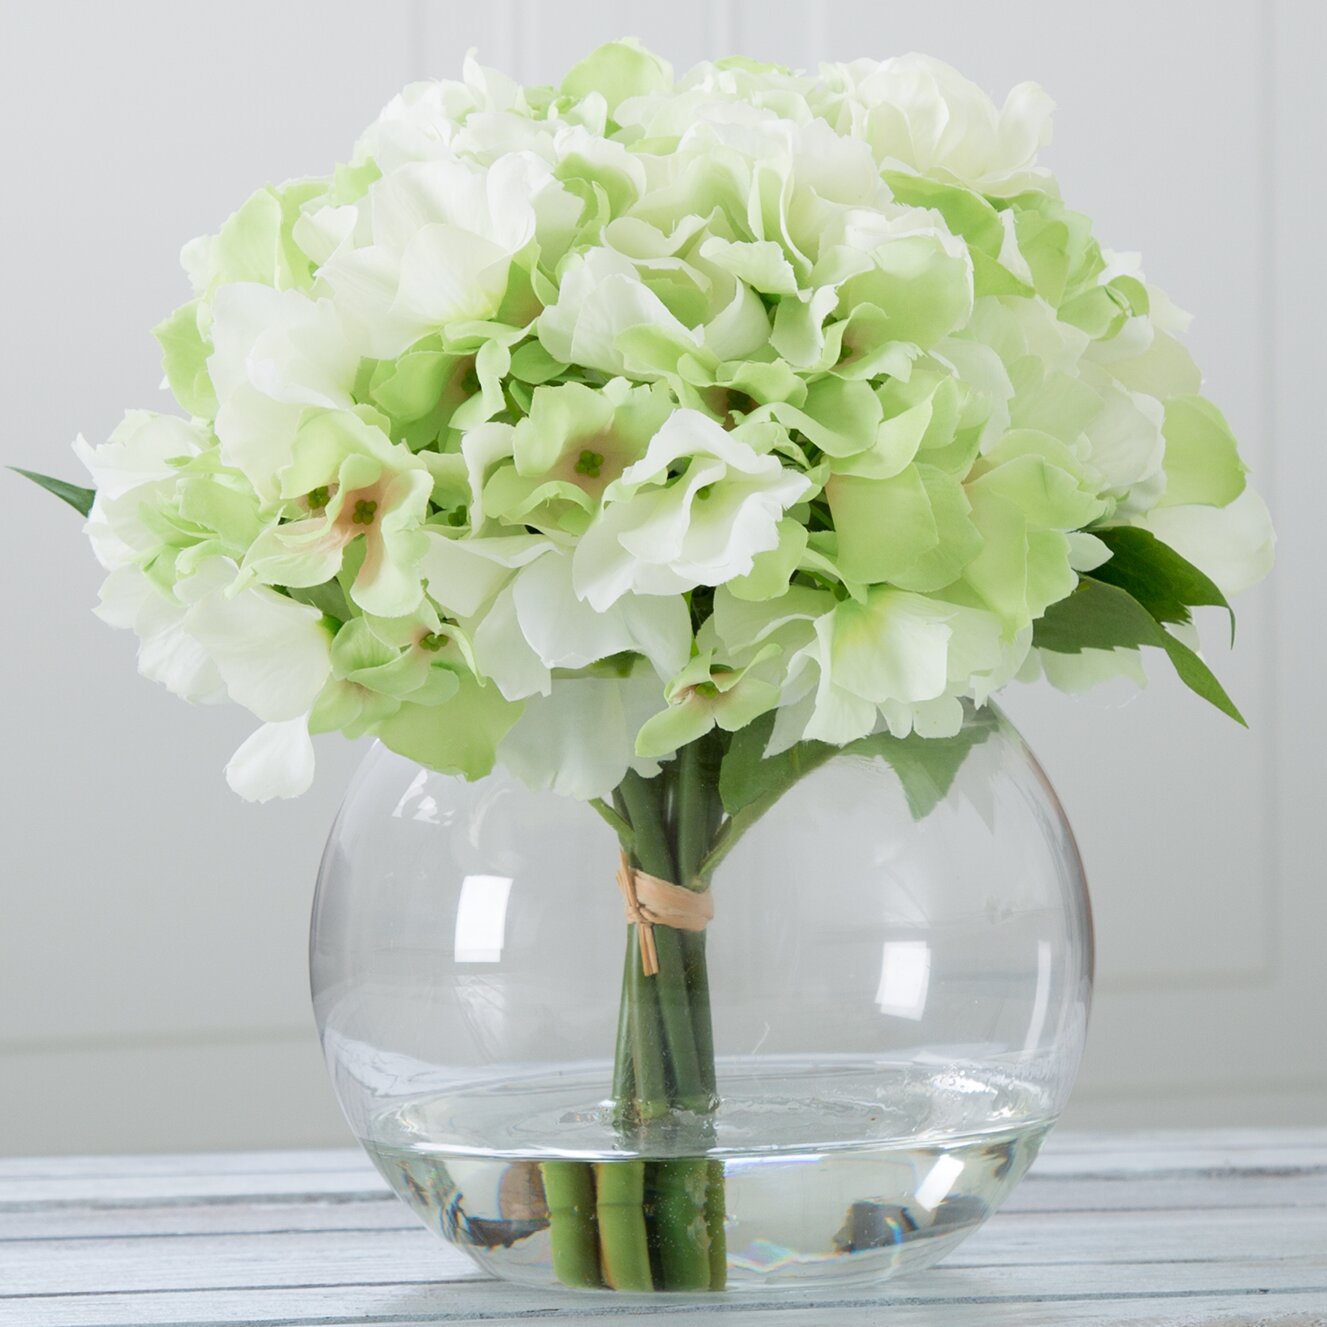 Pure Garden Hydrangea Arrangement In Glass Vase And Reviews Wayfair Ca